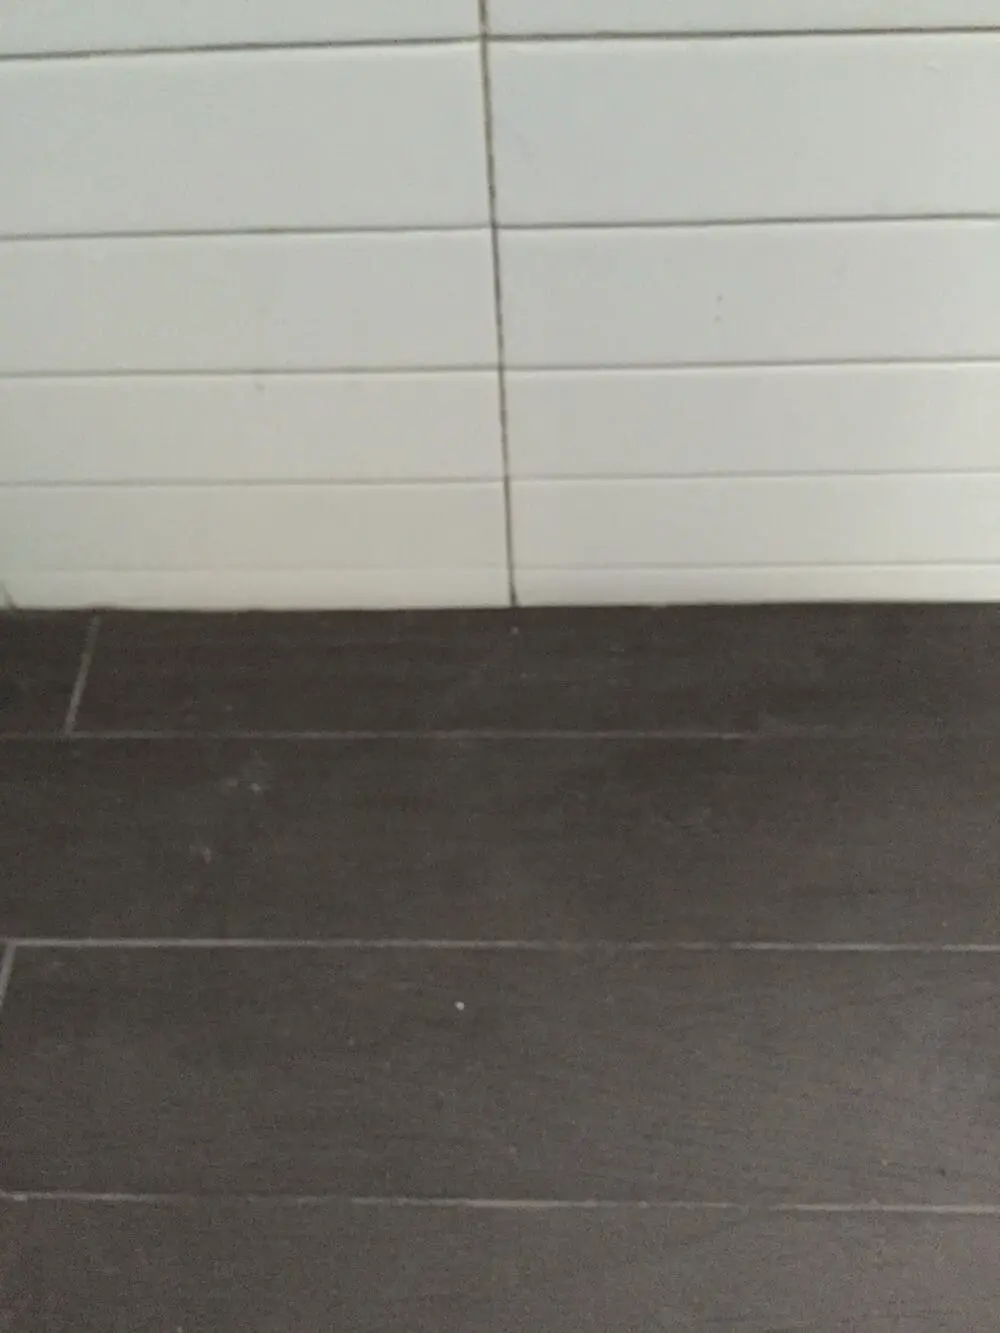 bathroom flooring